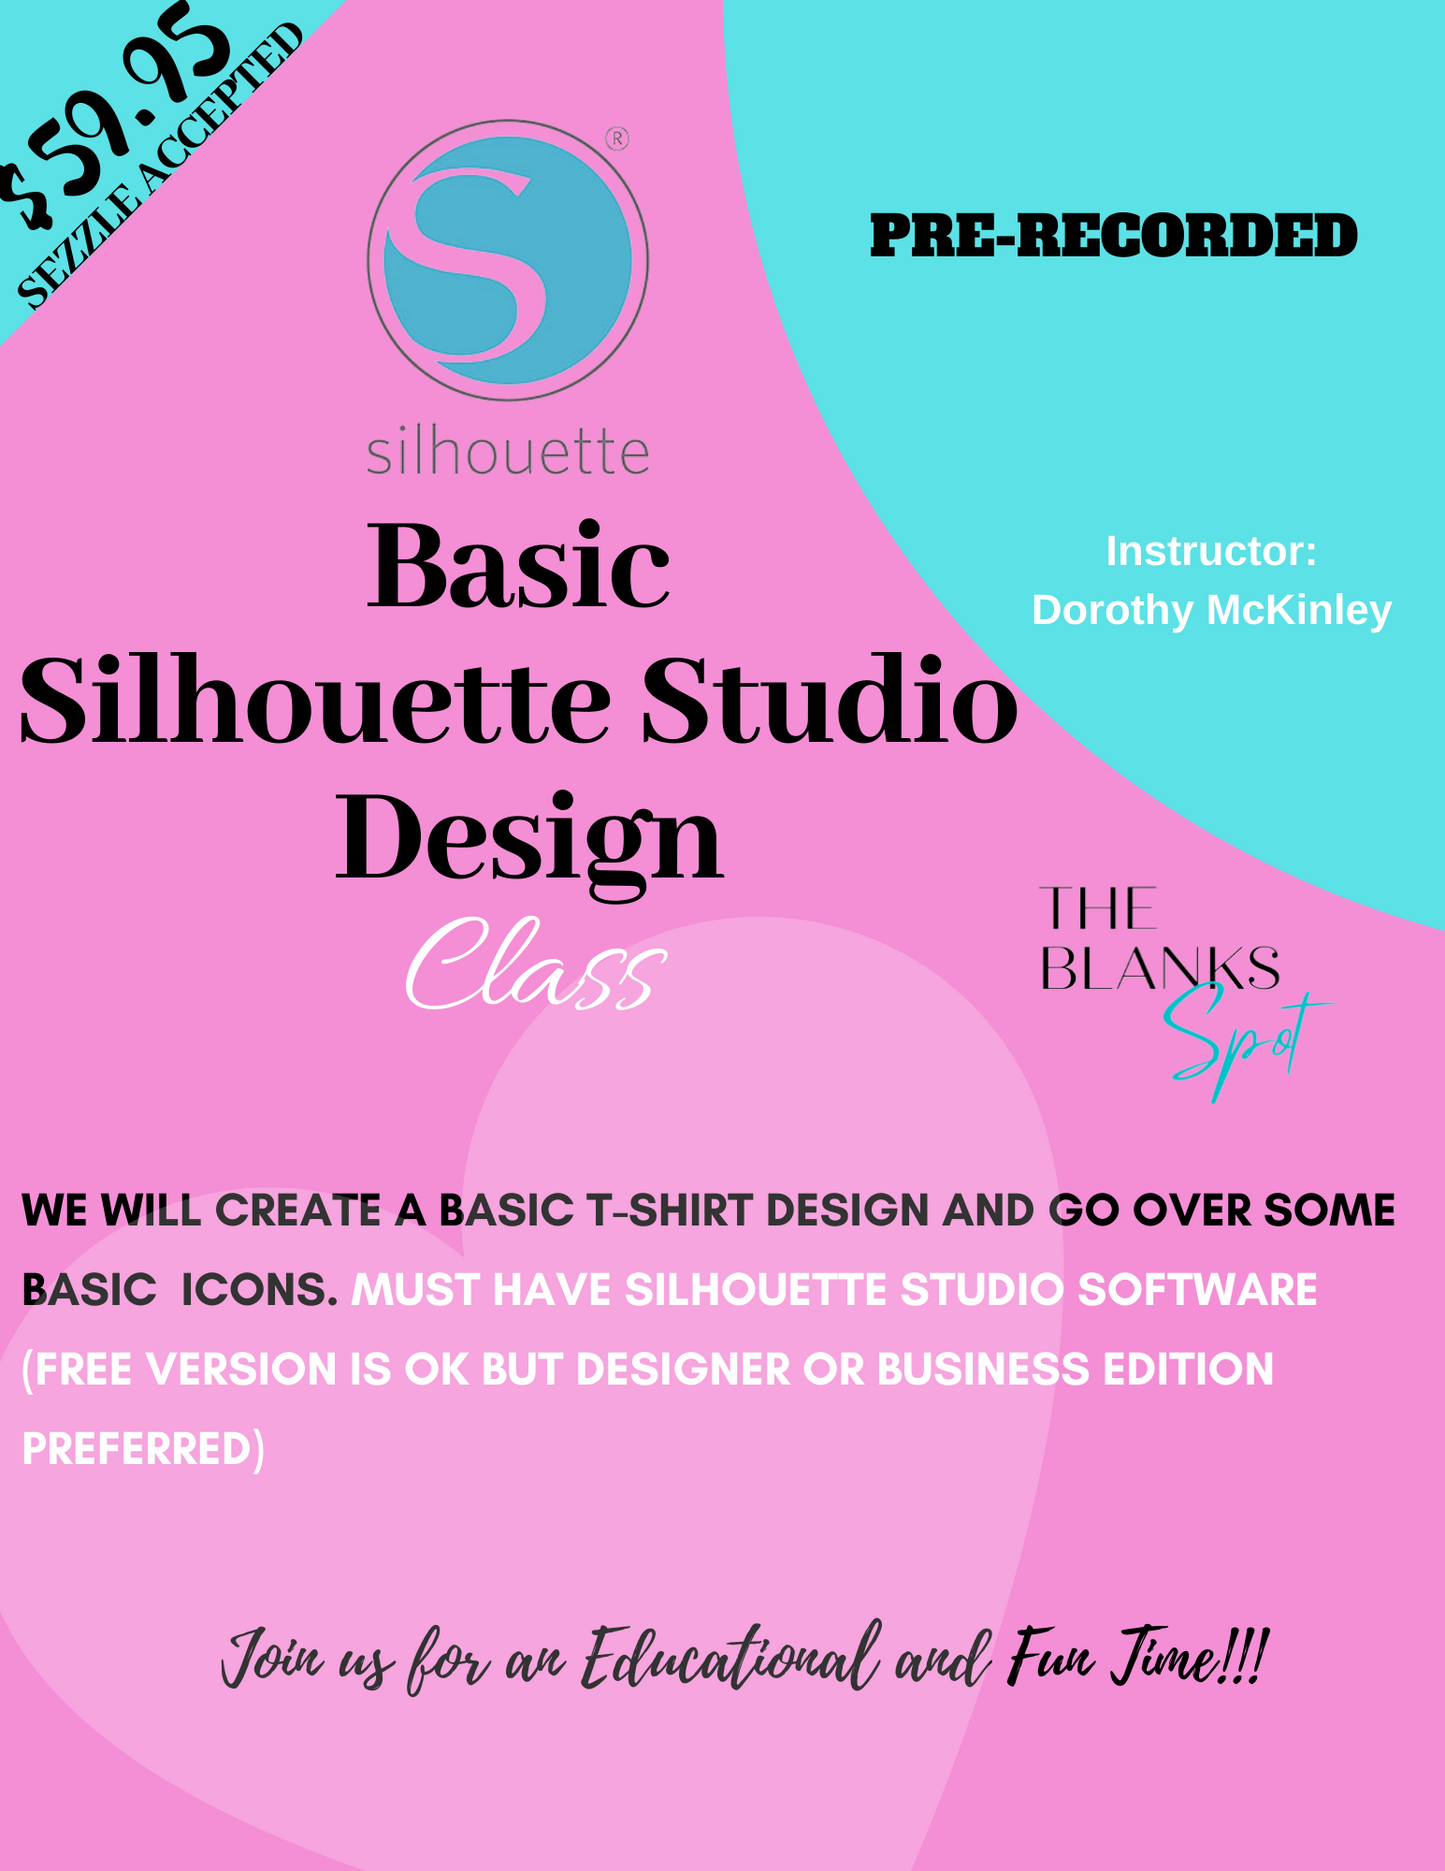 BASIC SILHOUETTE STUDIO DESIGN CLASS (PRE-RECORDED)